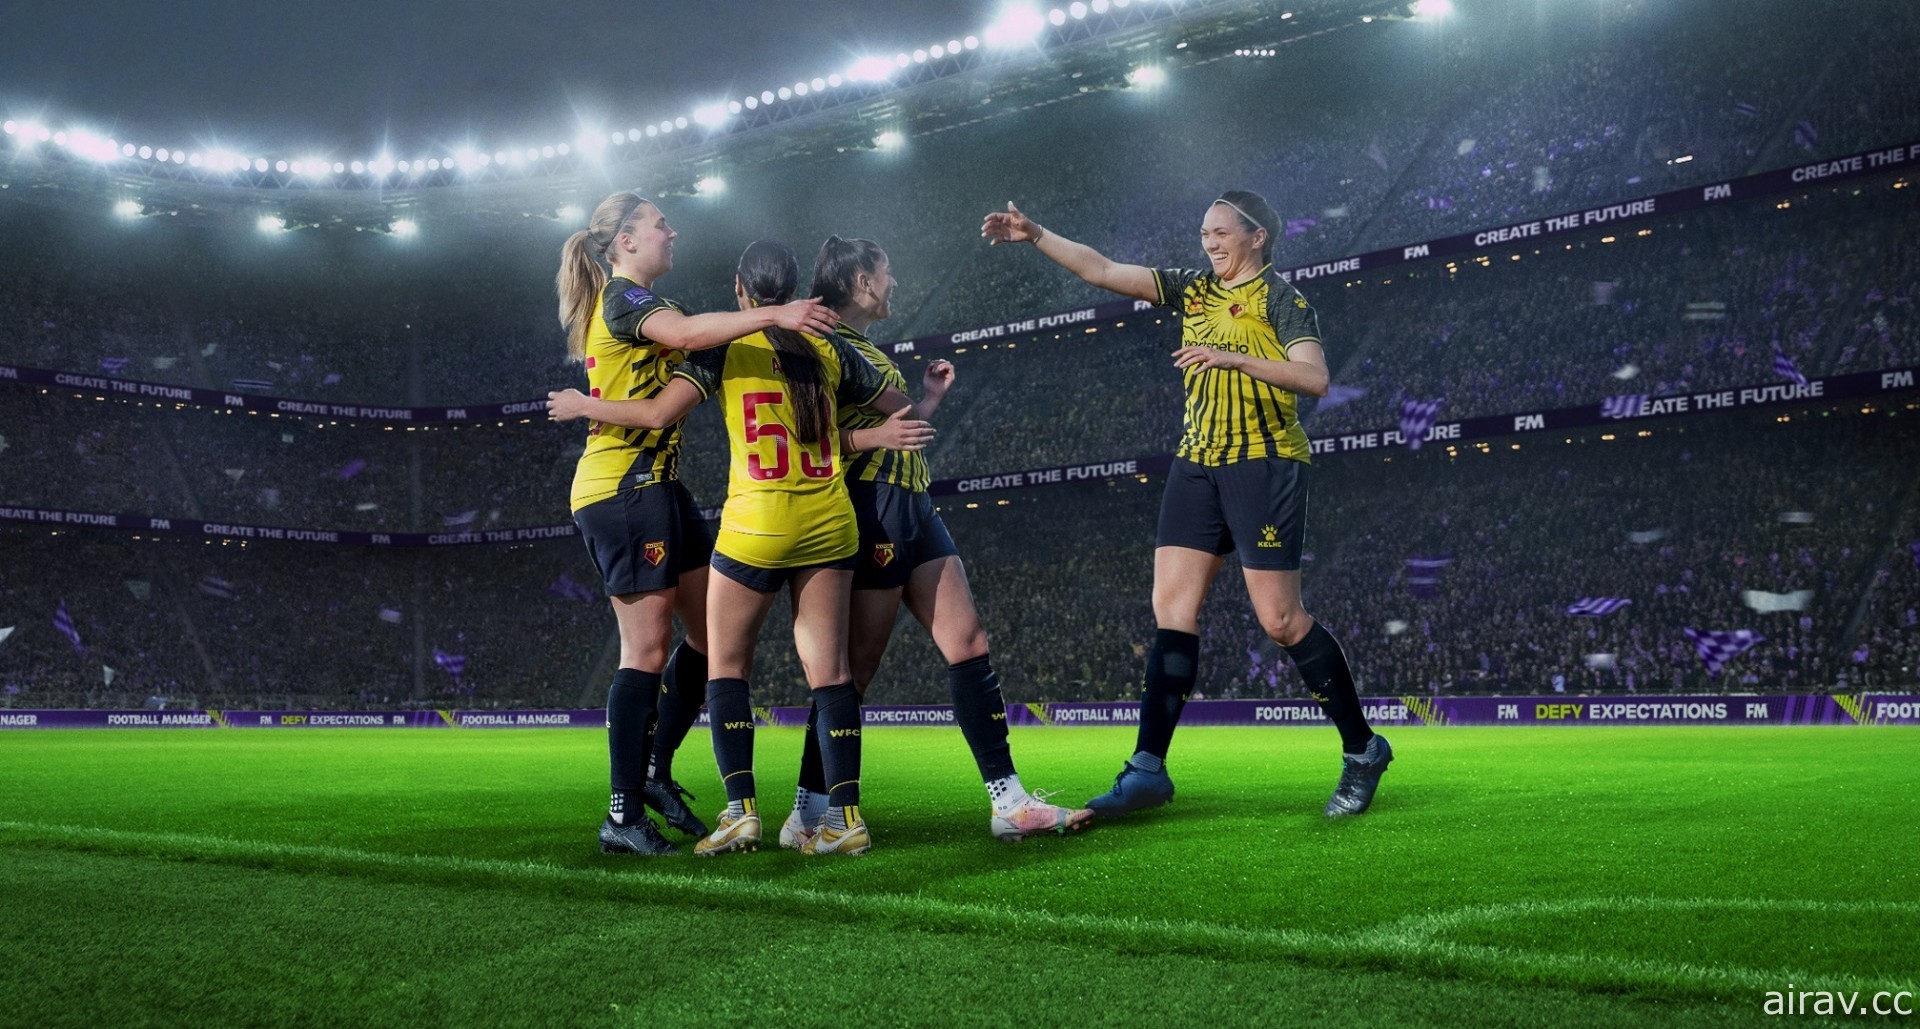 足球模拟经营游戏《足球经理》计画新增女子足球队 未来可选择男子或女子足球队